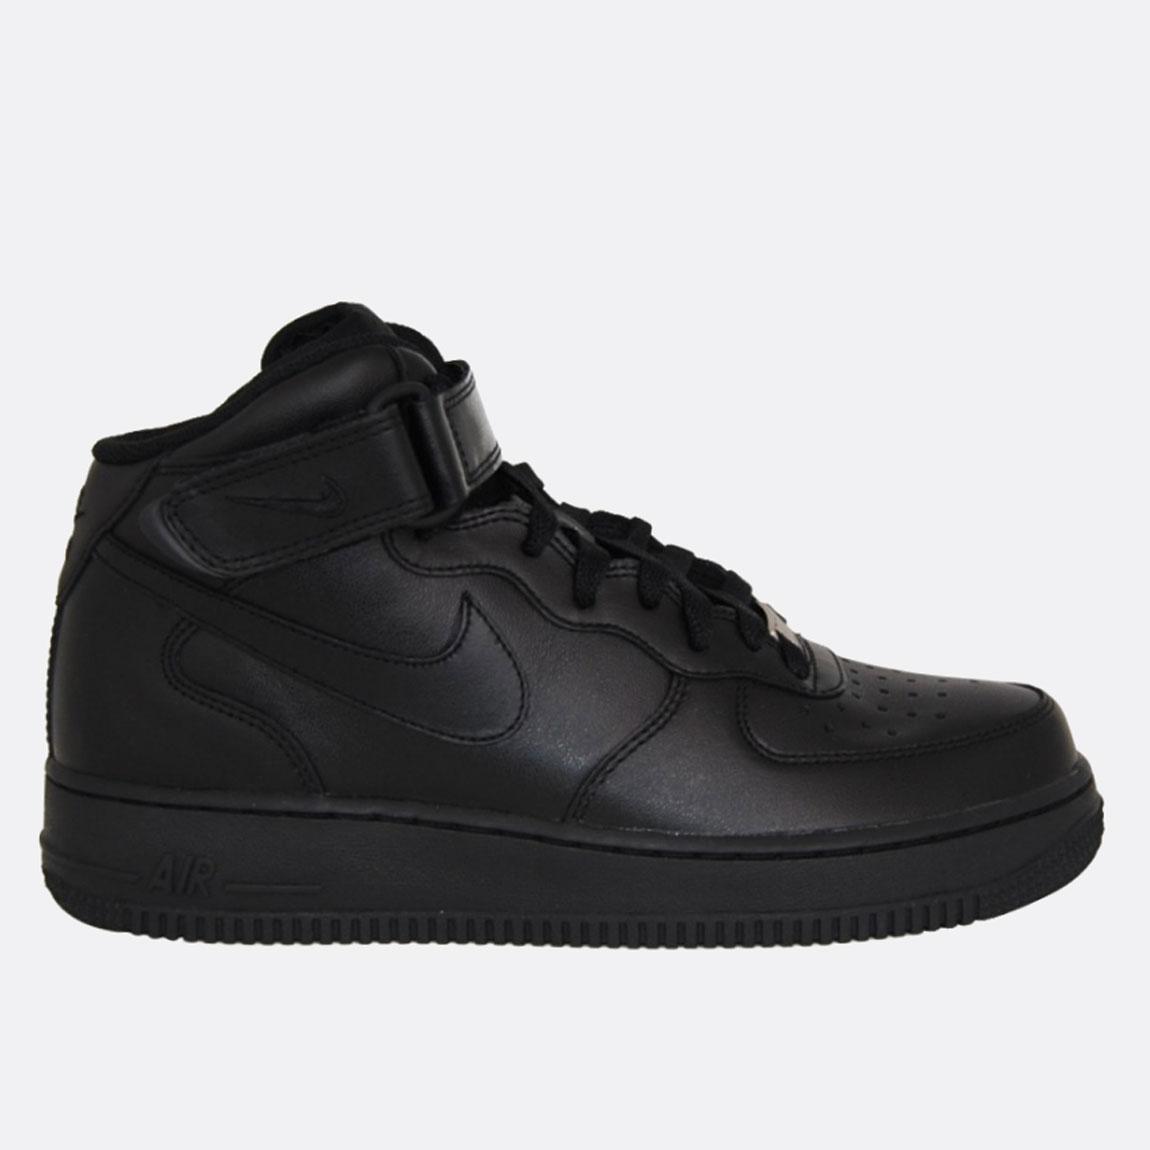 Nike Air Force 1 Mid '07 - 315123-001 - Black / Black Nike Sneakers ...